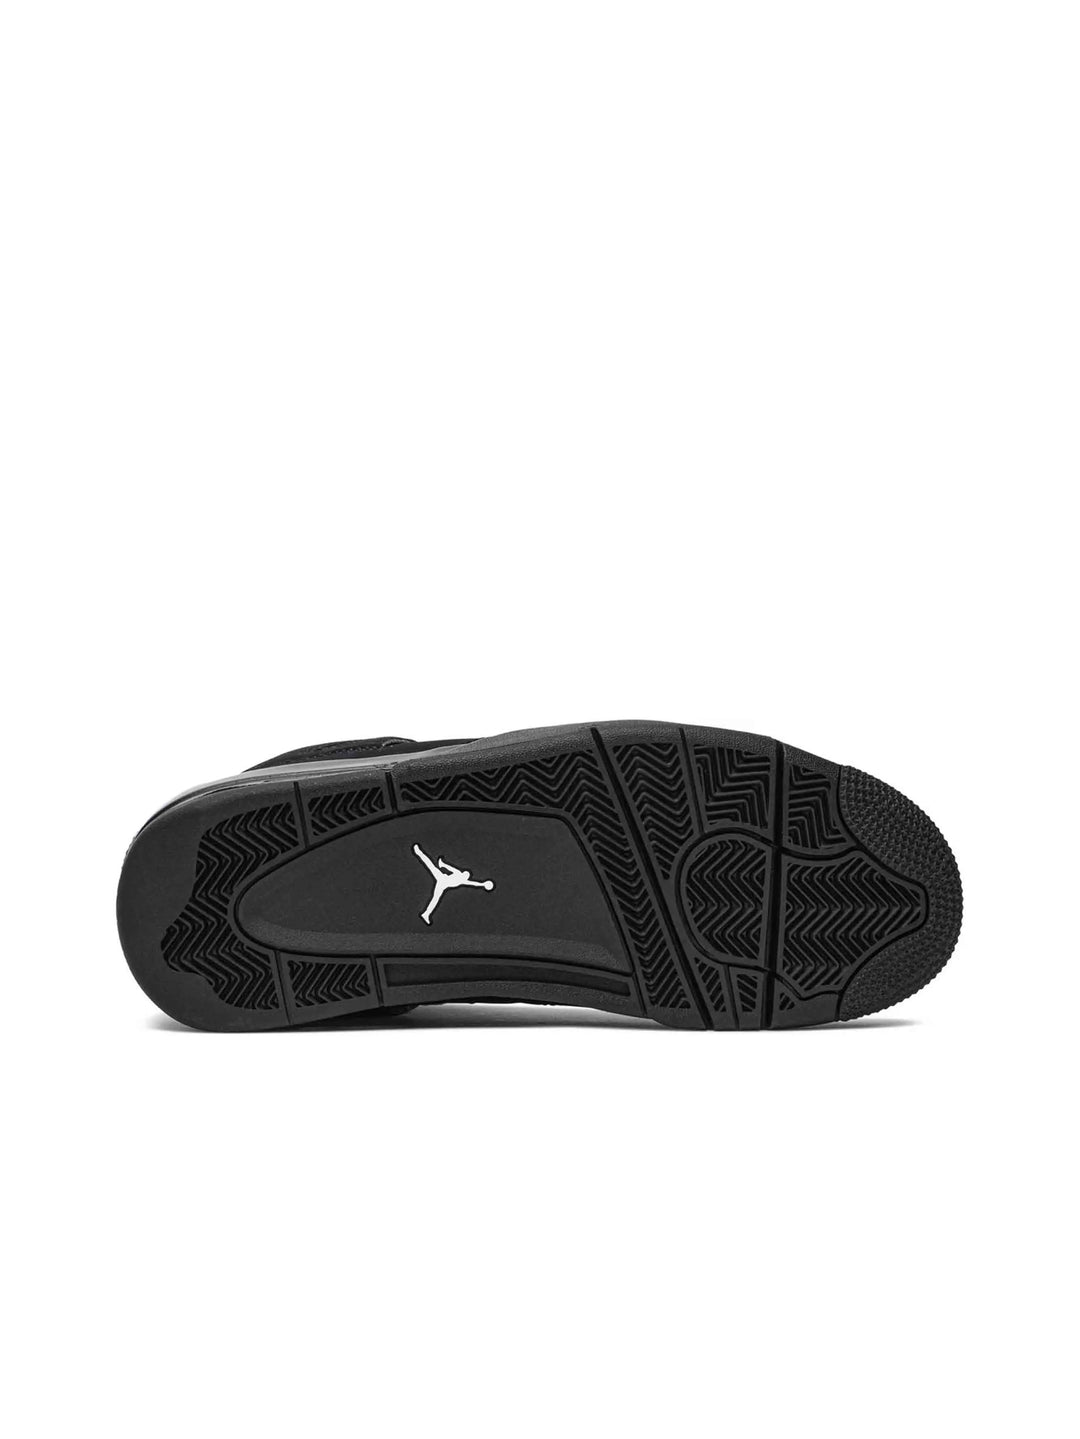 Nike Air Jordan 4 Retro Black Cat (2020) Prior